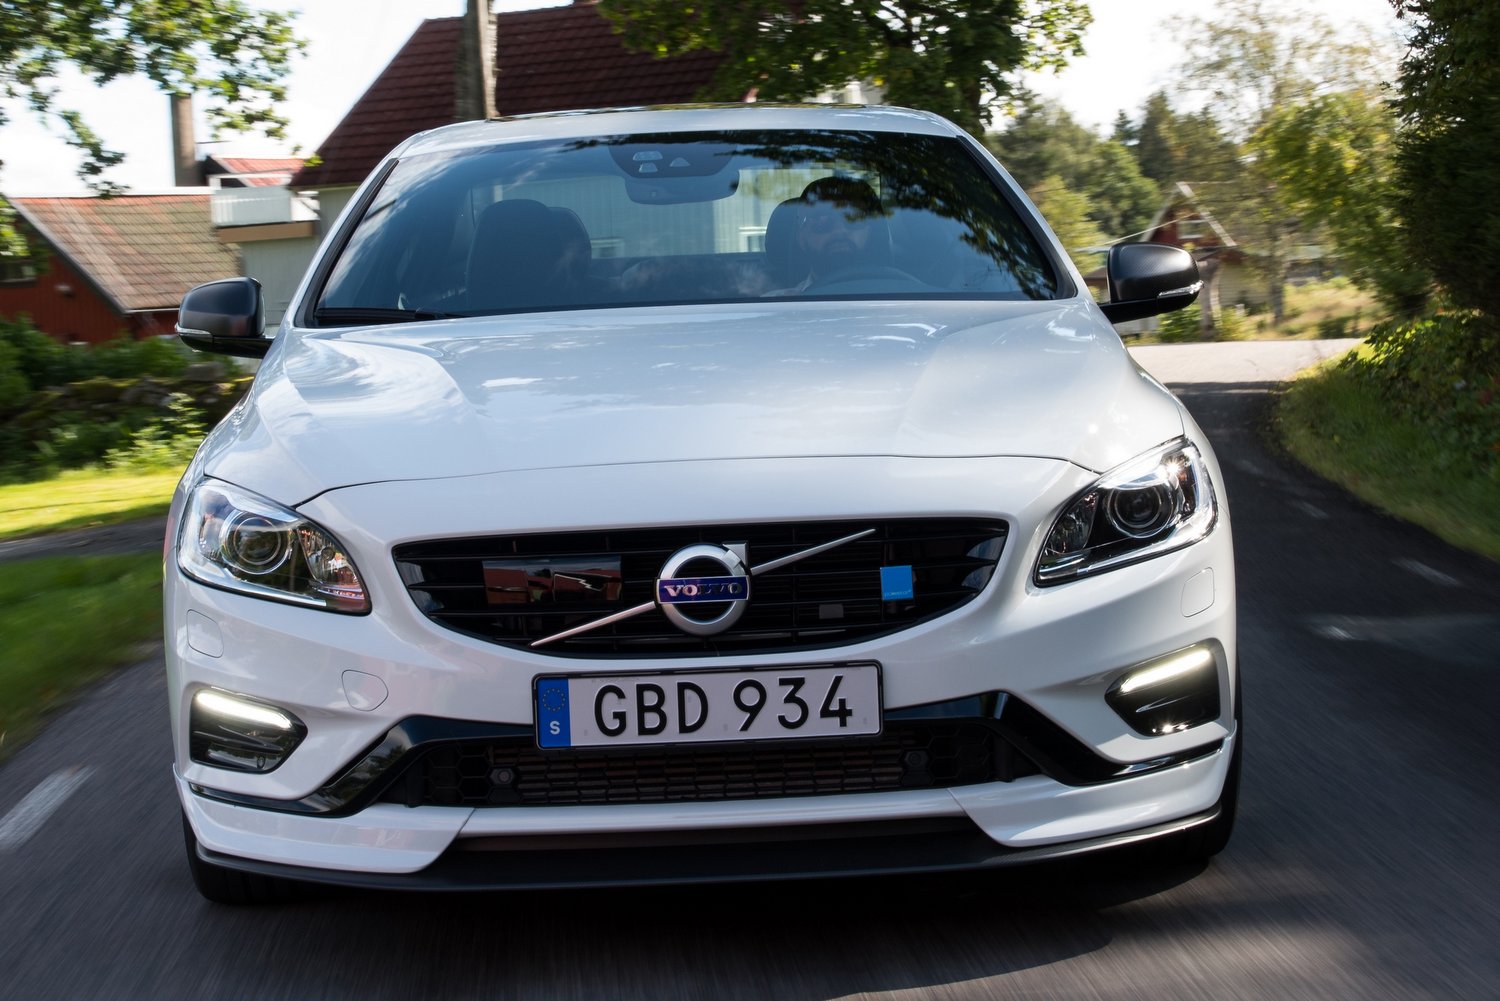 Karbon szorítja az útra a Volvo sportszedánját 5